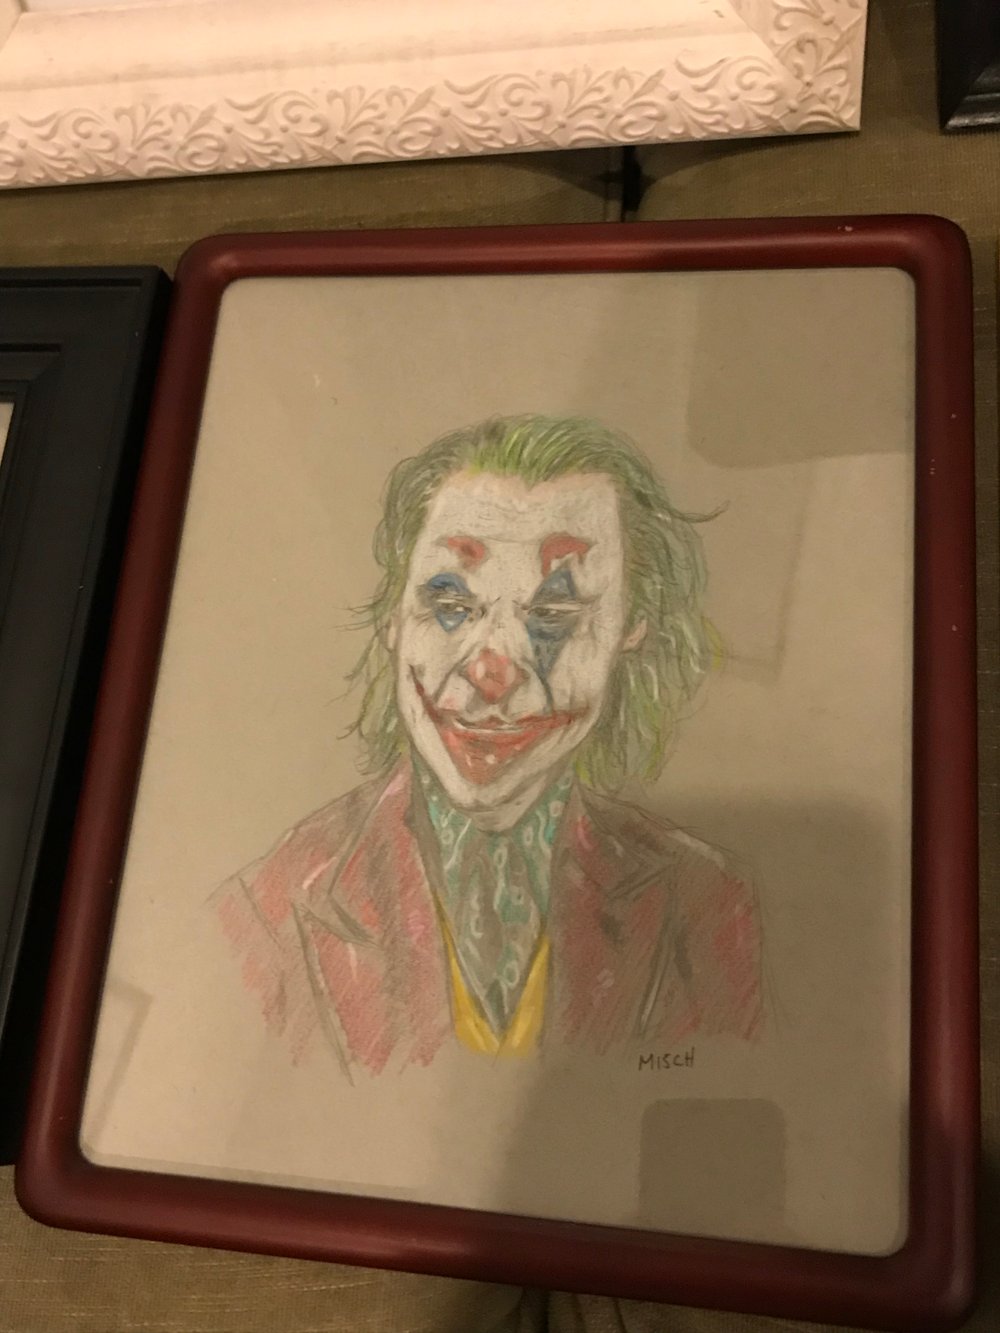 Joker (Joaquin Phoenix)